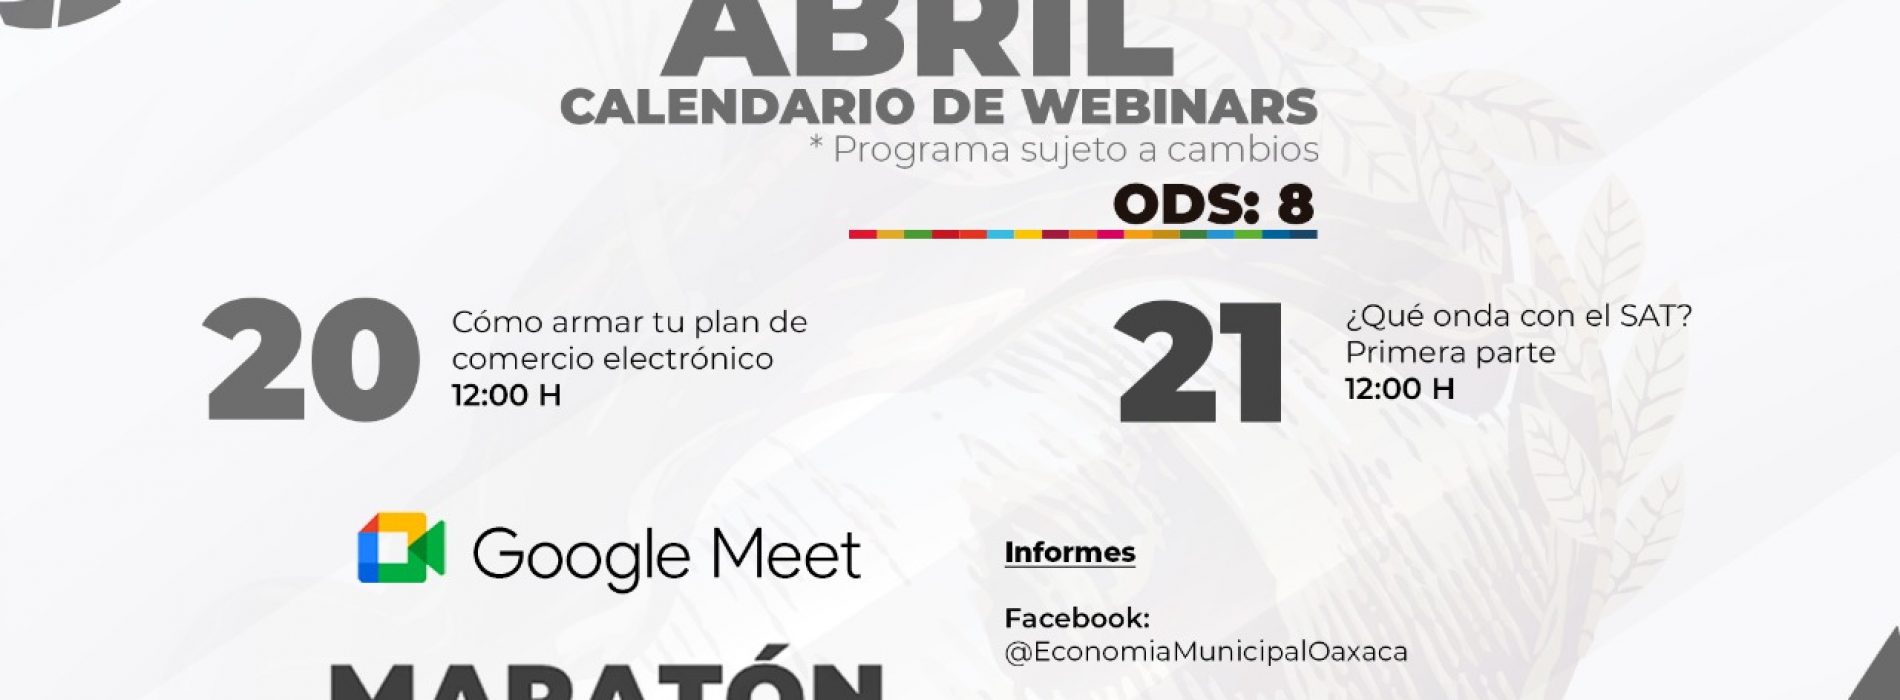 Invita Ayuntamiento de Oaxaca a participar en talleres virtuales y gratuitos sobre emprendimiento